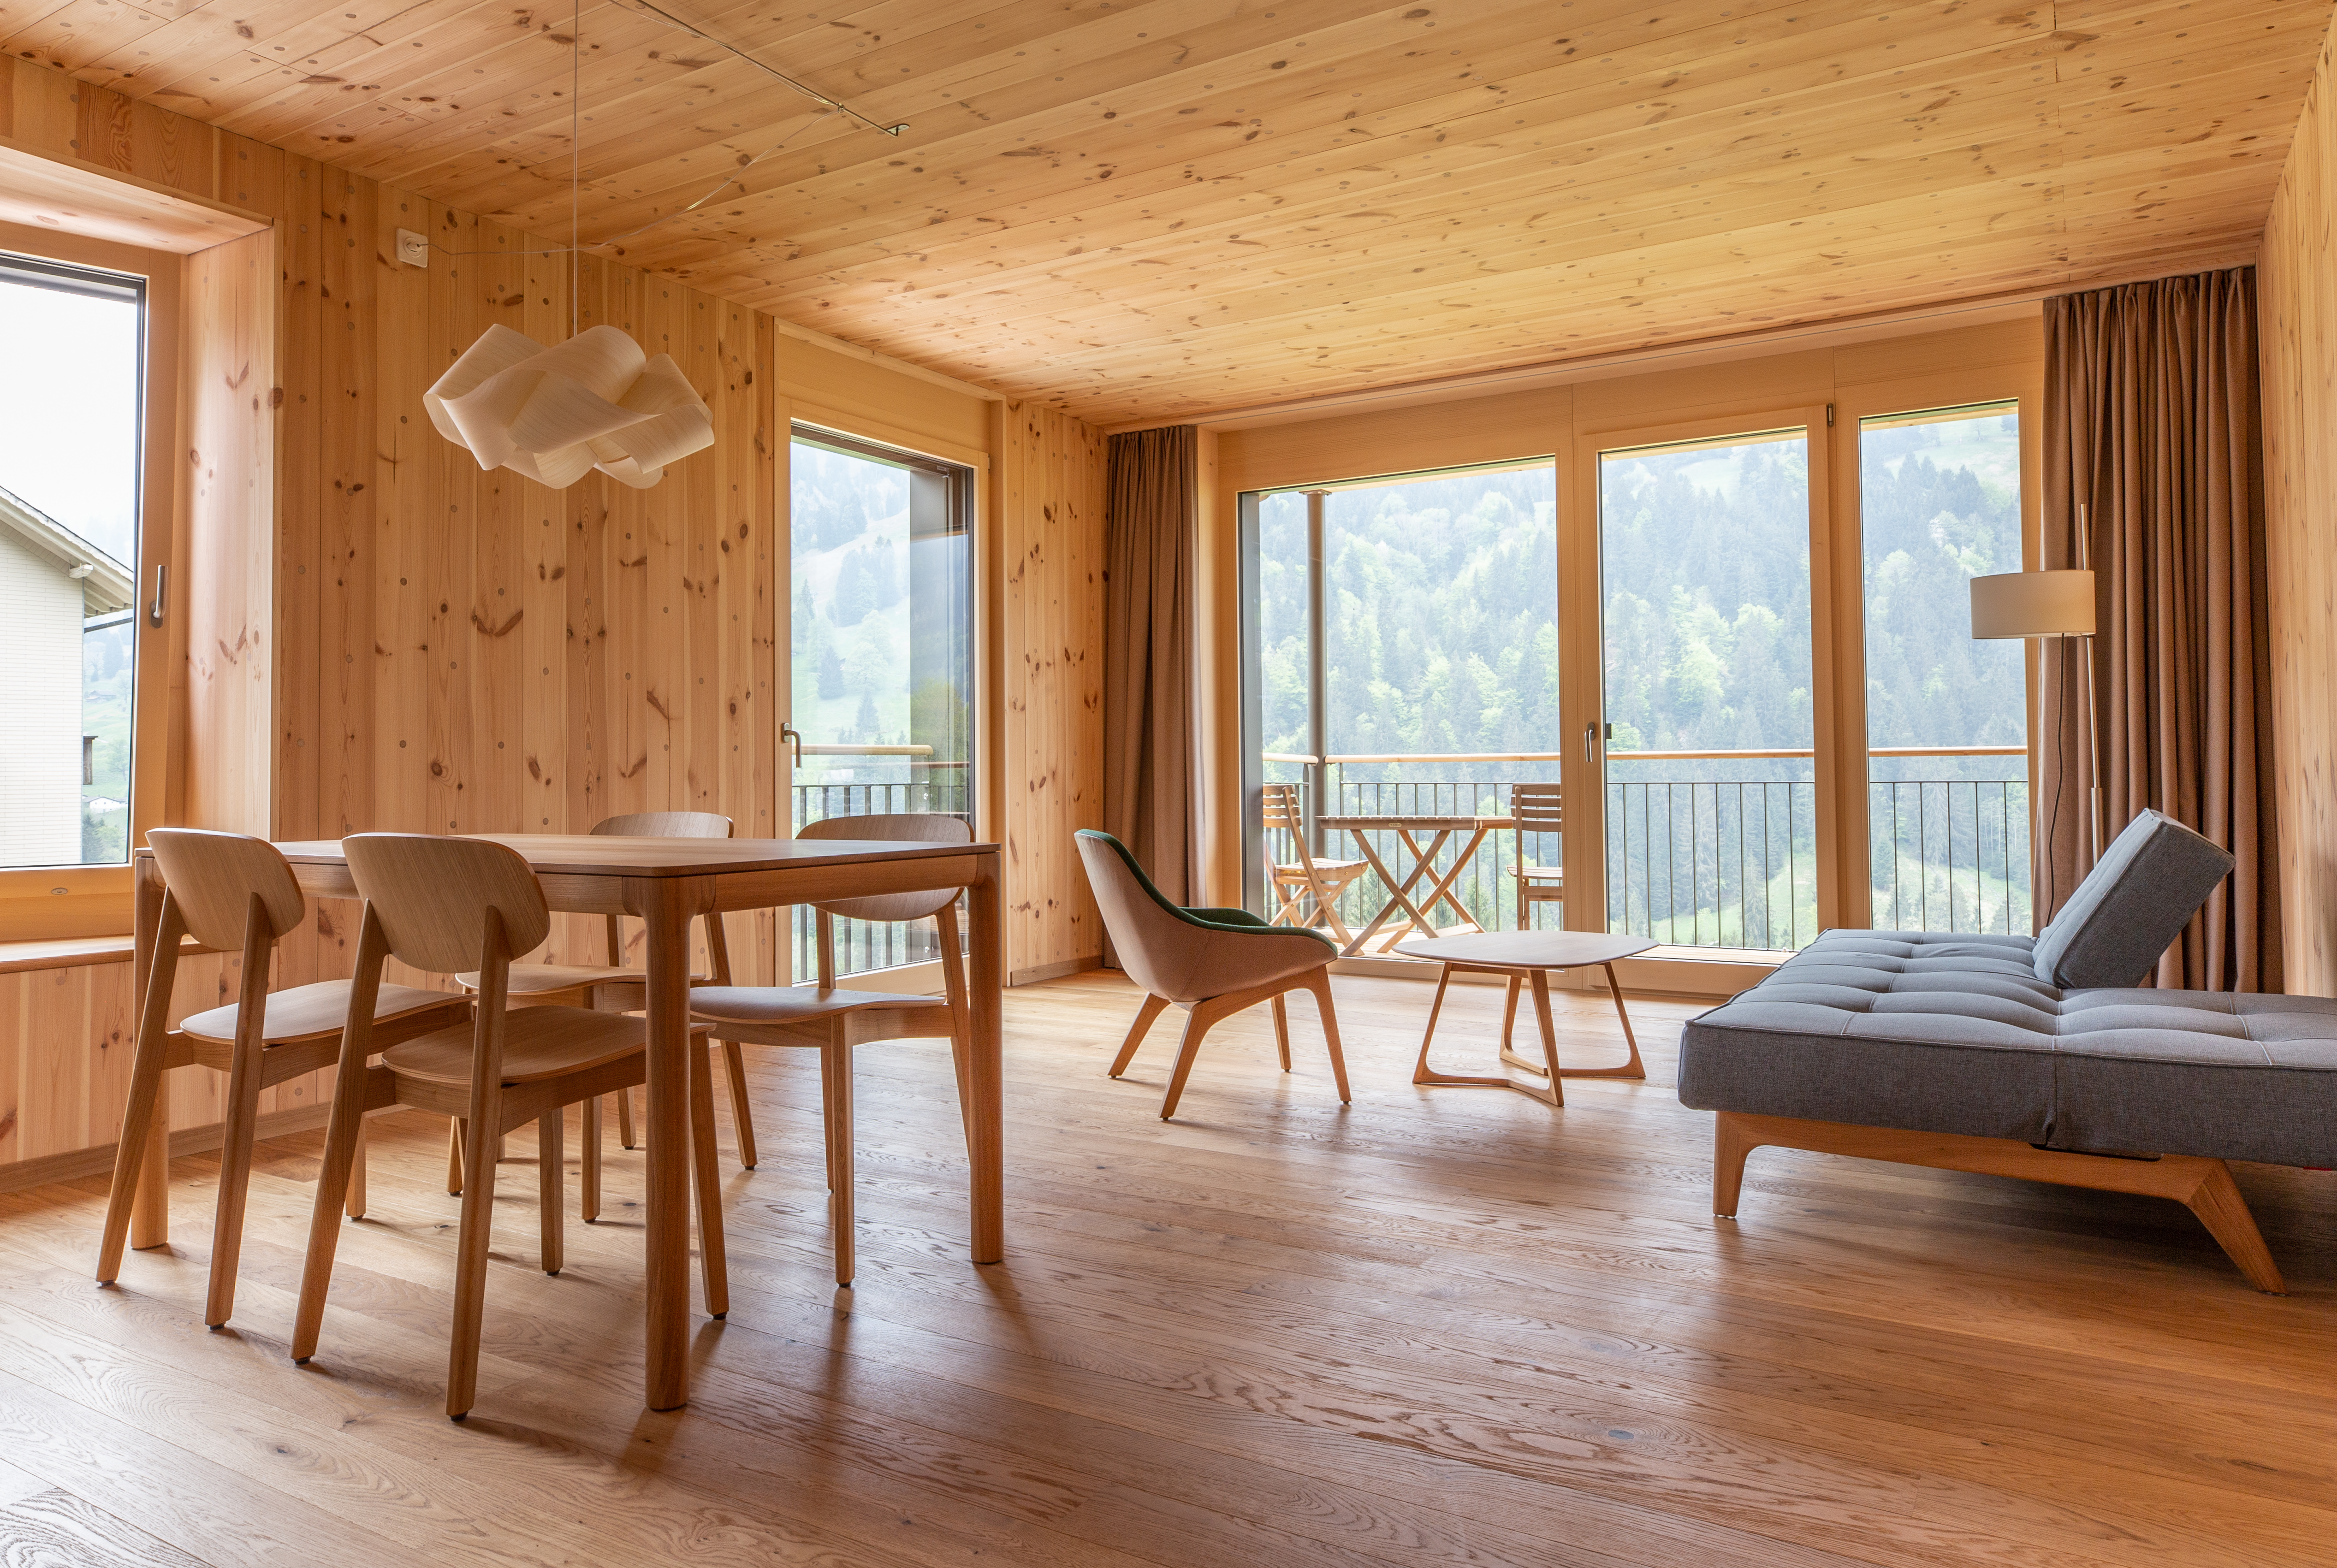 Ferienwohnungen im ChieneHuus in Holz100-Bauweise